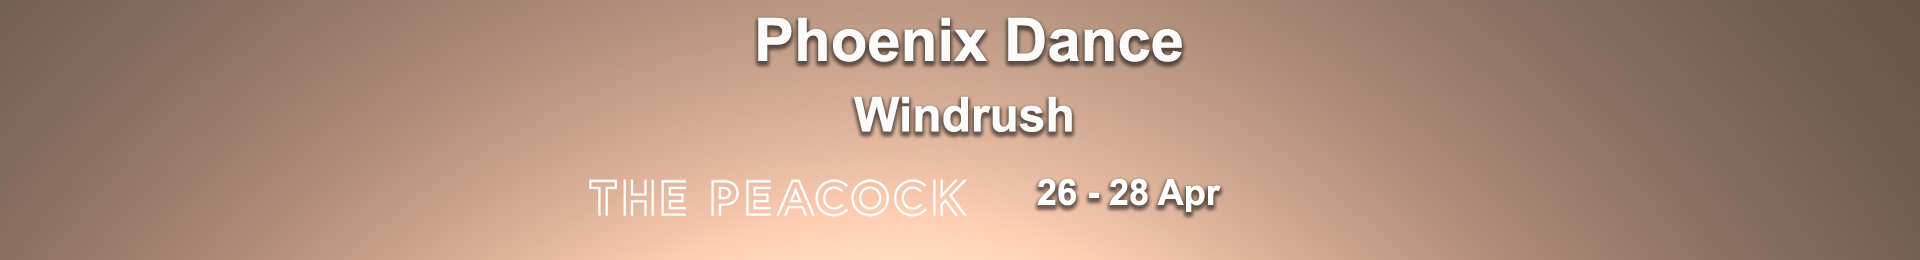 Phoenix Dance: Windrush banner image